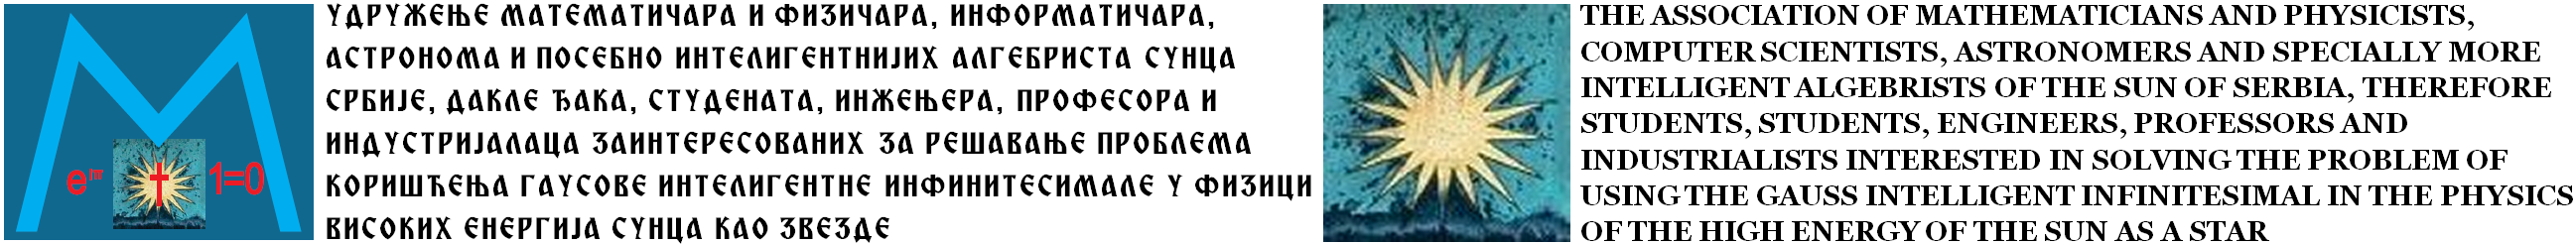 УДРУЖЕЊЕ МАТЕМАТИЧАРА И ФИЗИЧАРА СУНЦА СРБИЈЕ Лого